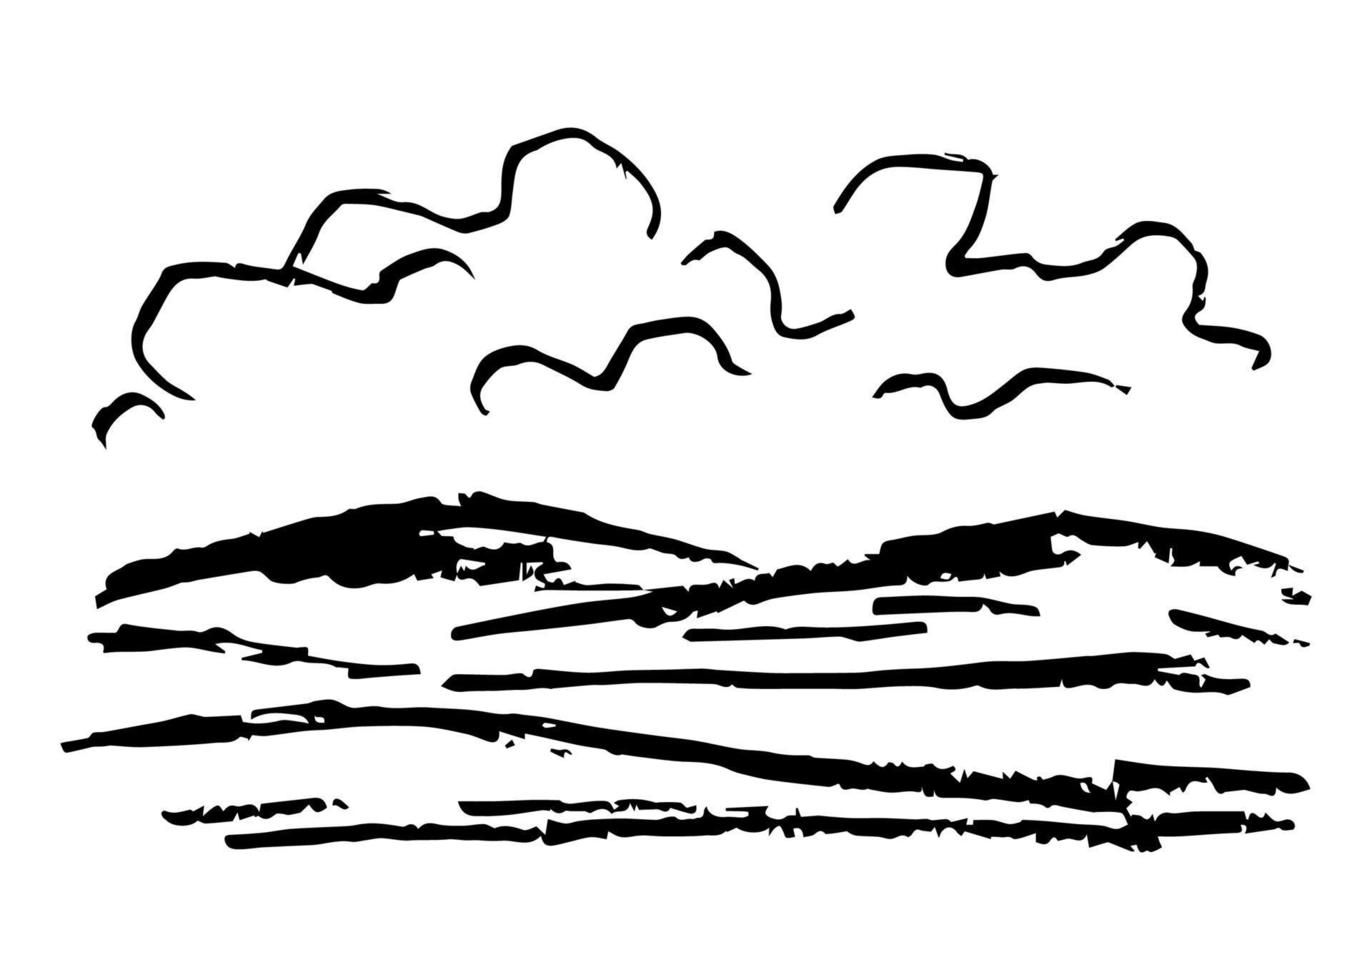 eenvoudige vectortekening van houtskoolpotlood. natuur, landschap, weer, klimaat. silhouet van bergen, wolken. zwart-wit schets. vector